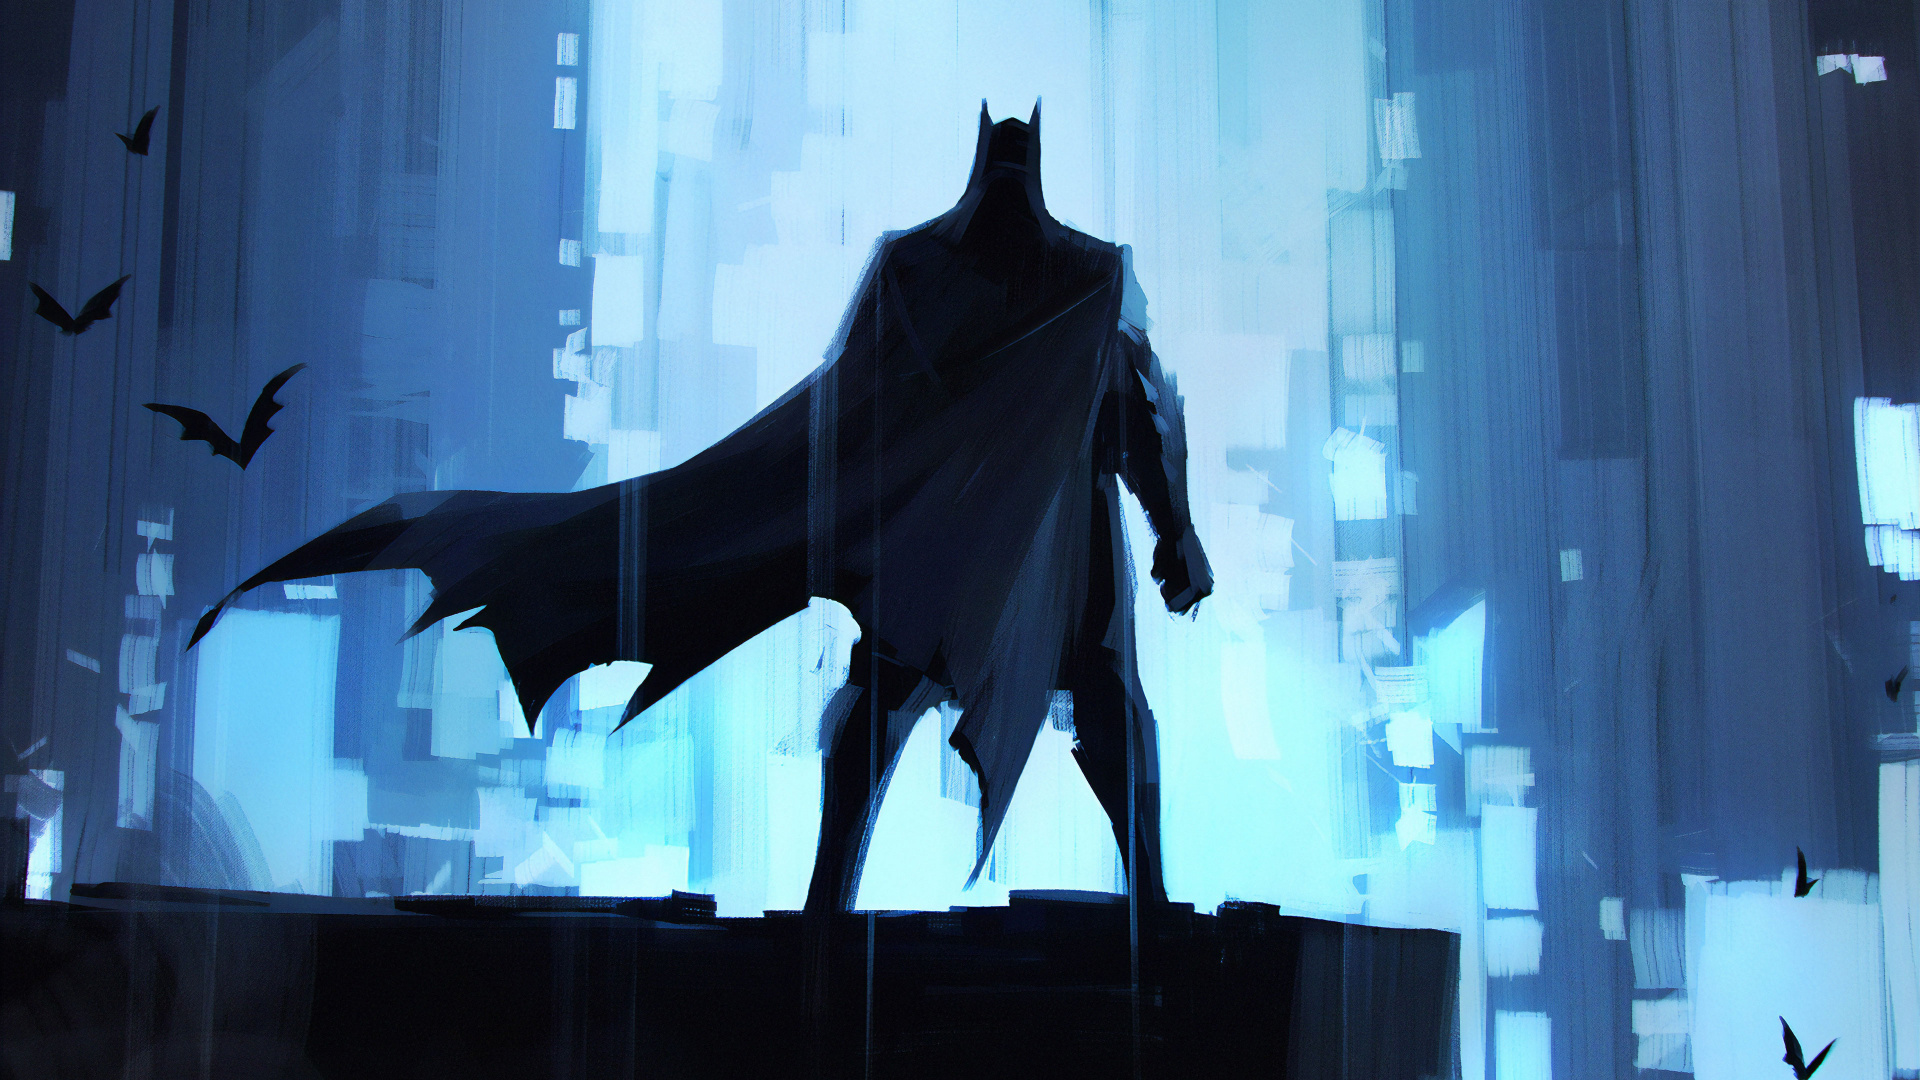 蝙蝠侠, 艺术, Dc漫画, 超级英雄, 正义联盟 壁纸 1920x1080 允许